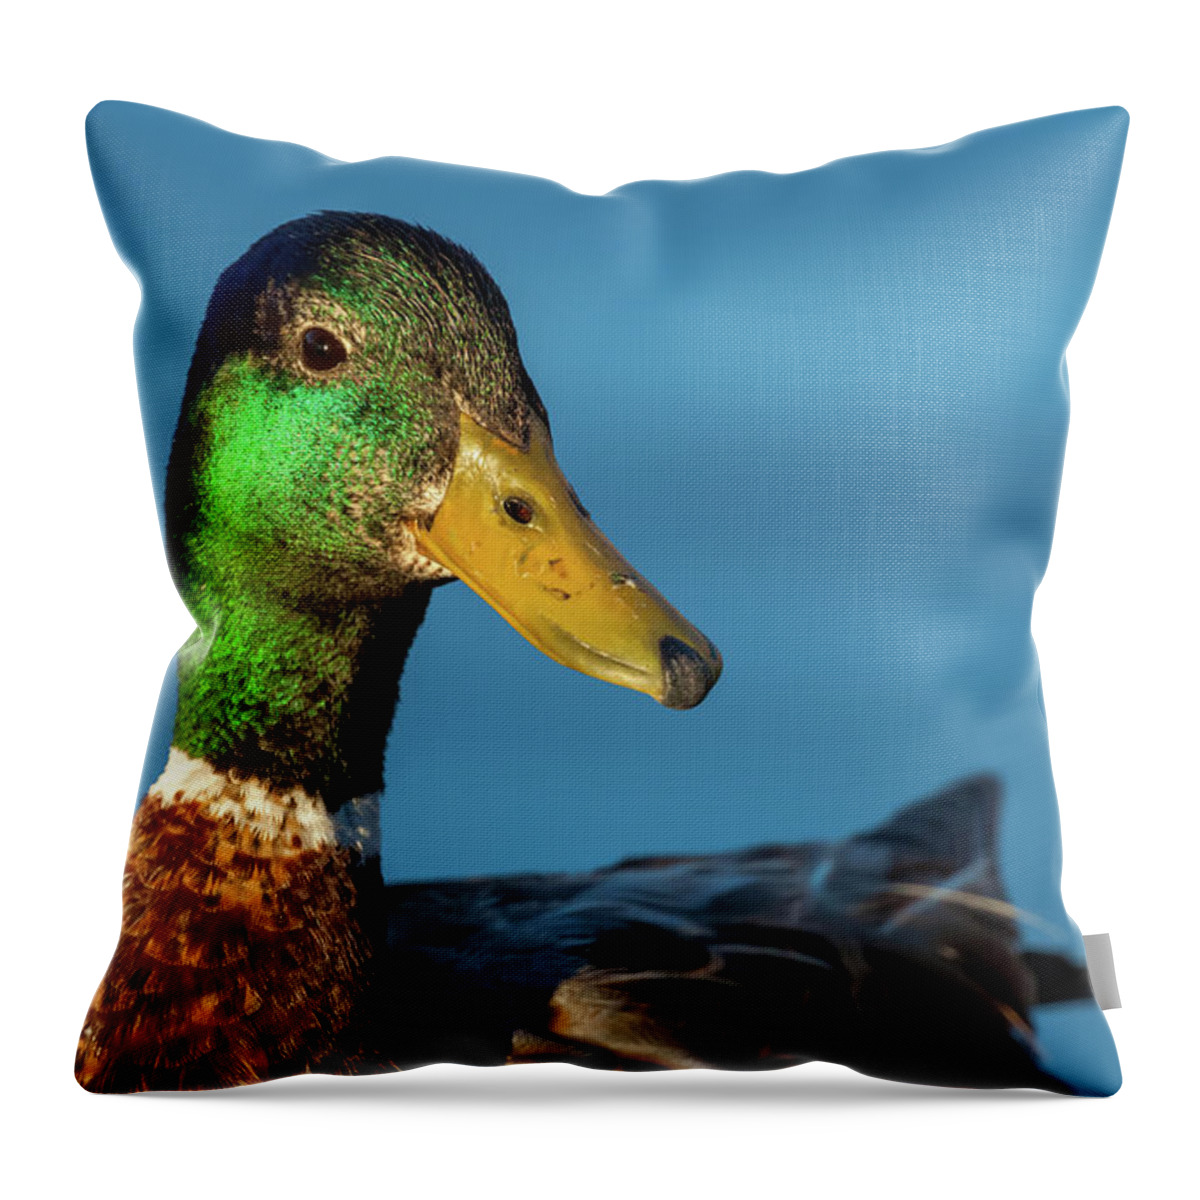 Mallard Duck Throw Pillow featuring the photograph Mallard Duck by Jonathan Nguyen